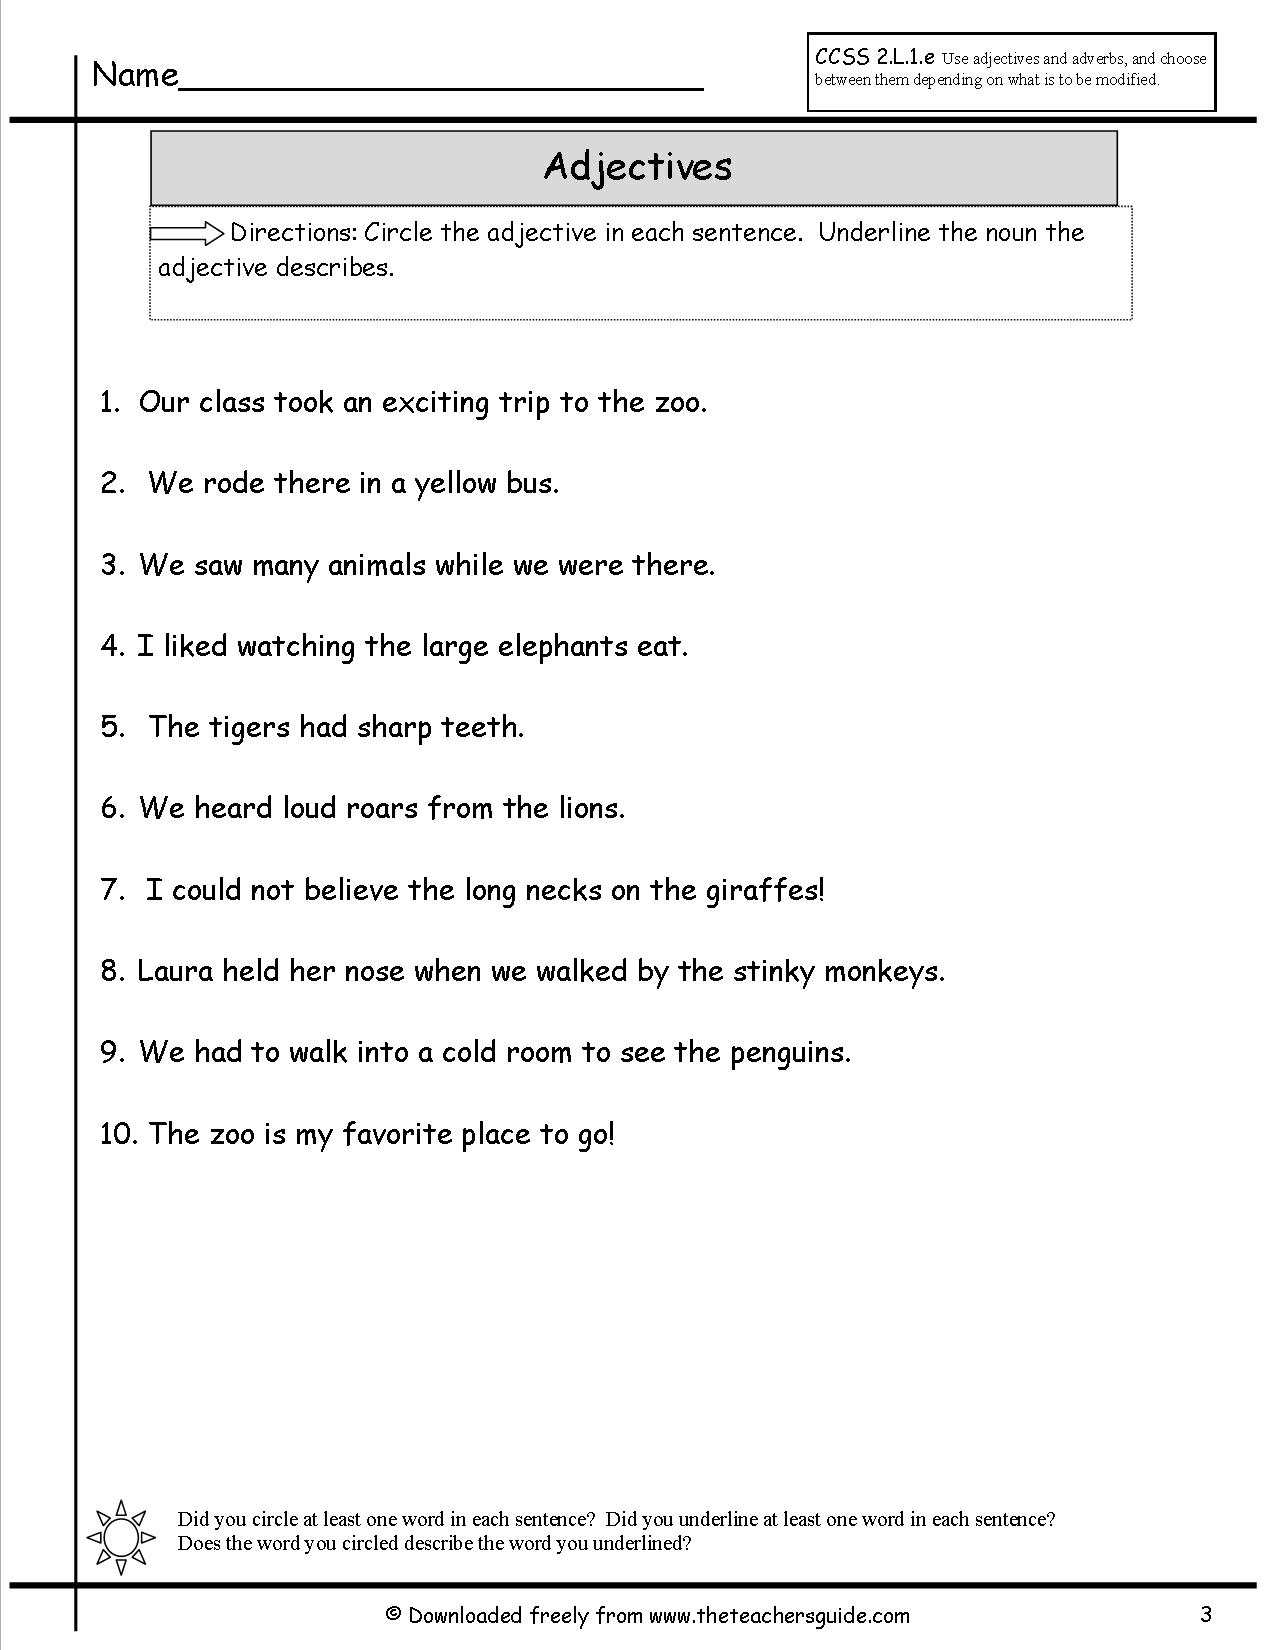 free-printable-adjectives-worksheet-1-kiddoworksheets